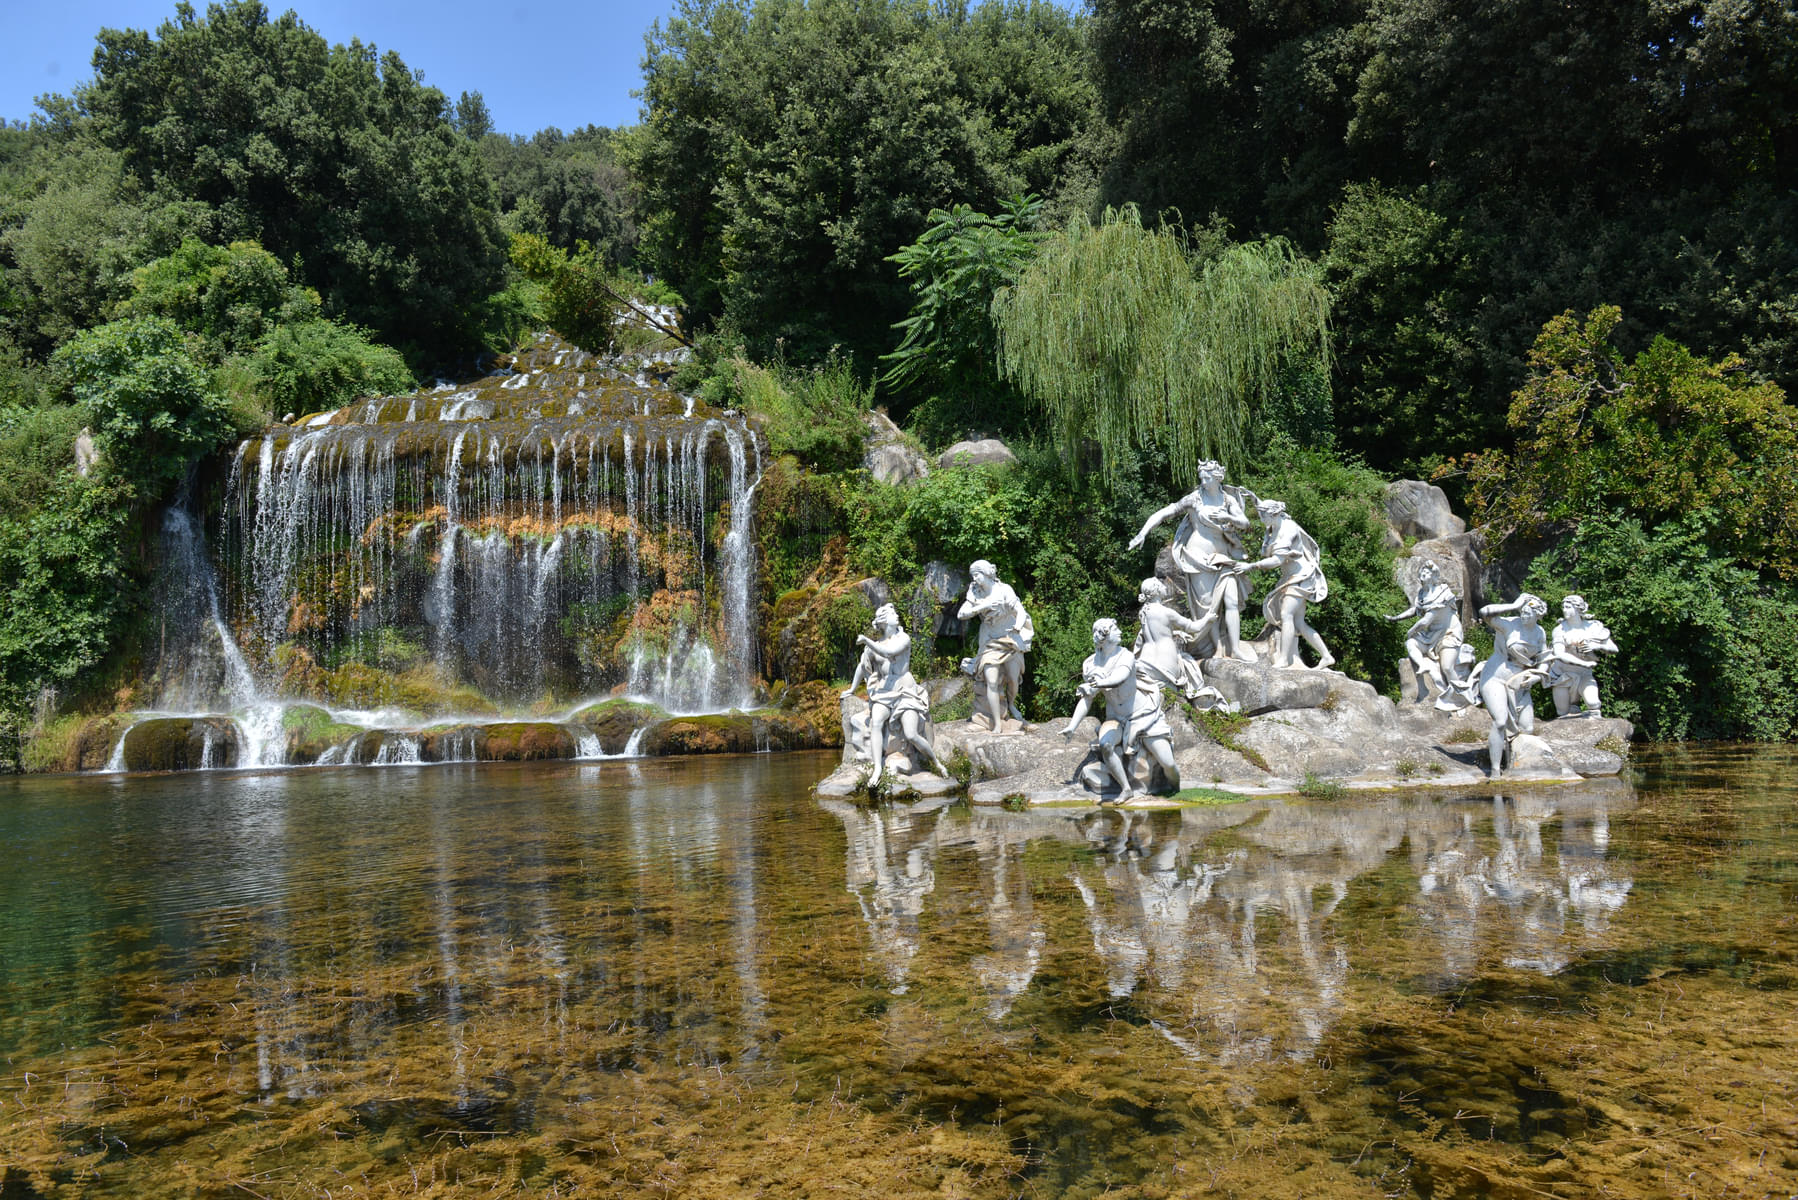 The Palace Waterfalls